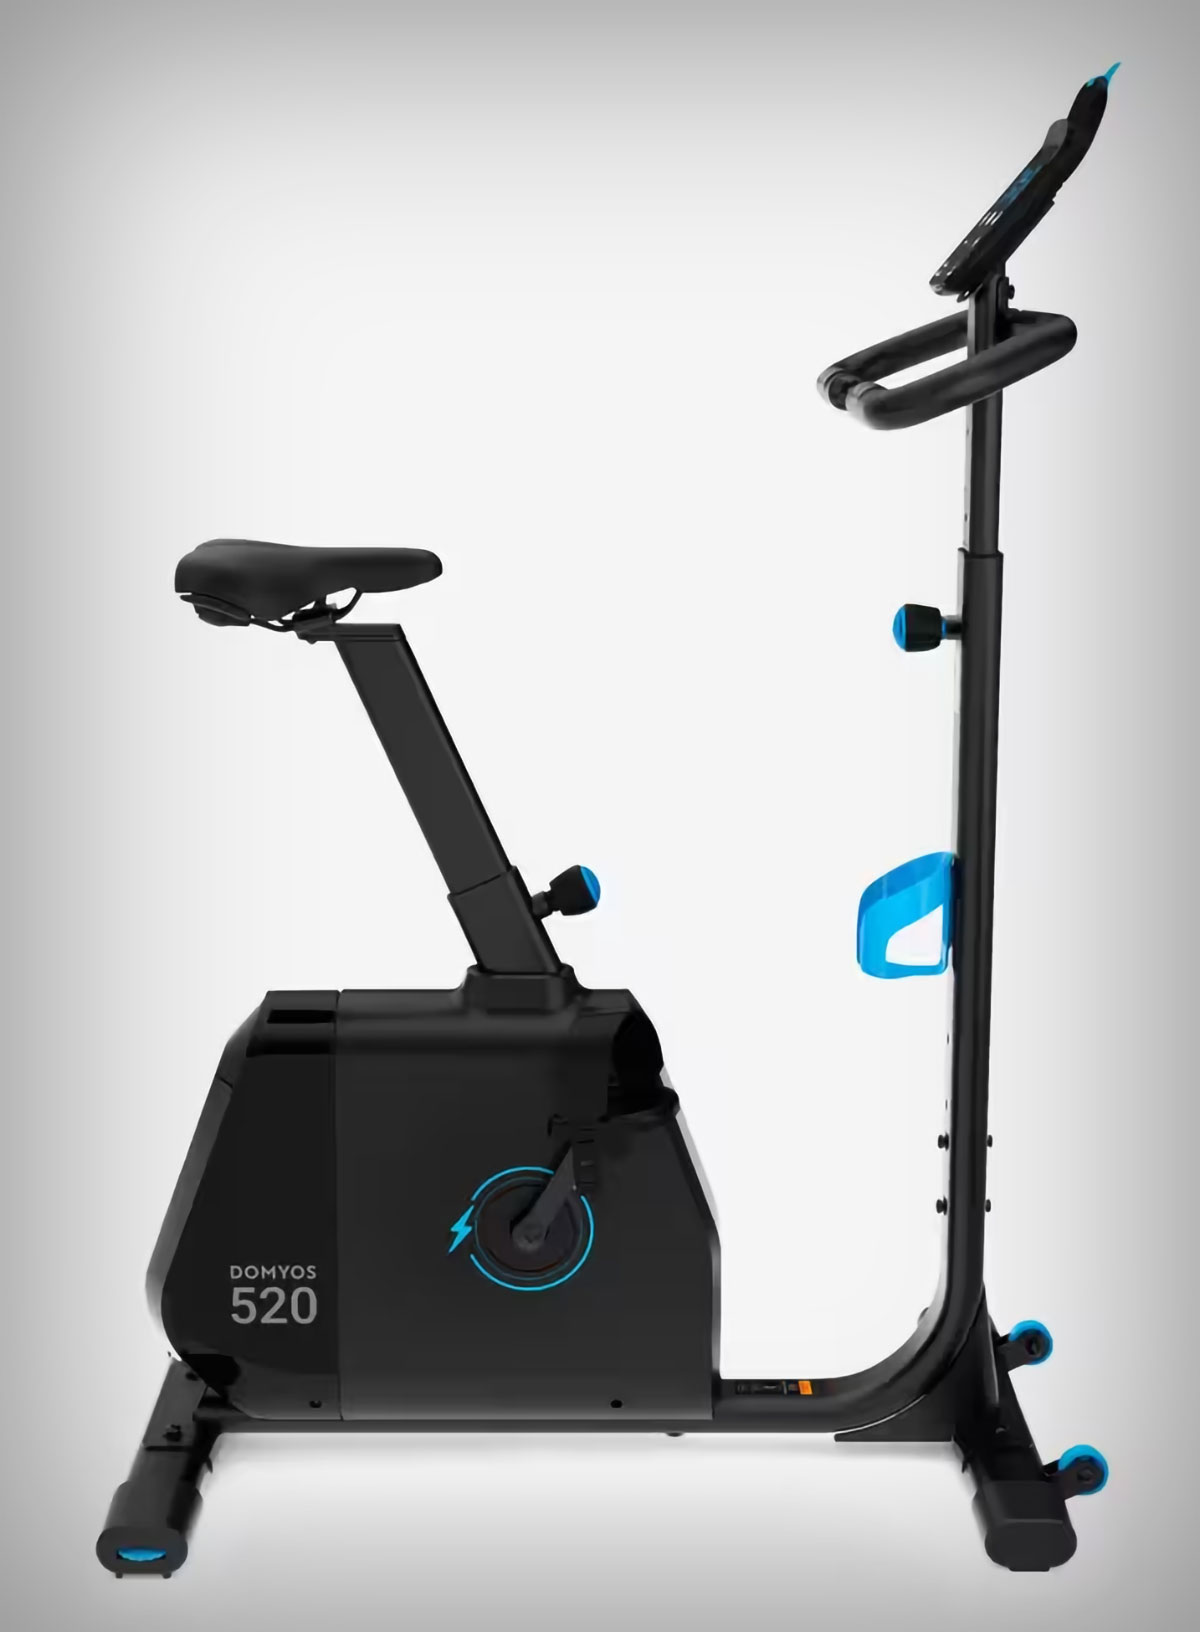 Domyos 520, una bicicleta estática autoalimentada (sin cables) compatible con Kinomap ideal para usar en familia